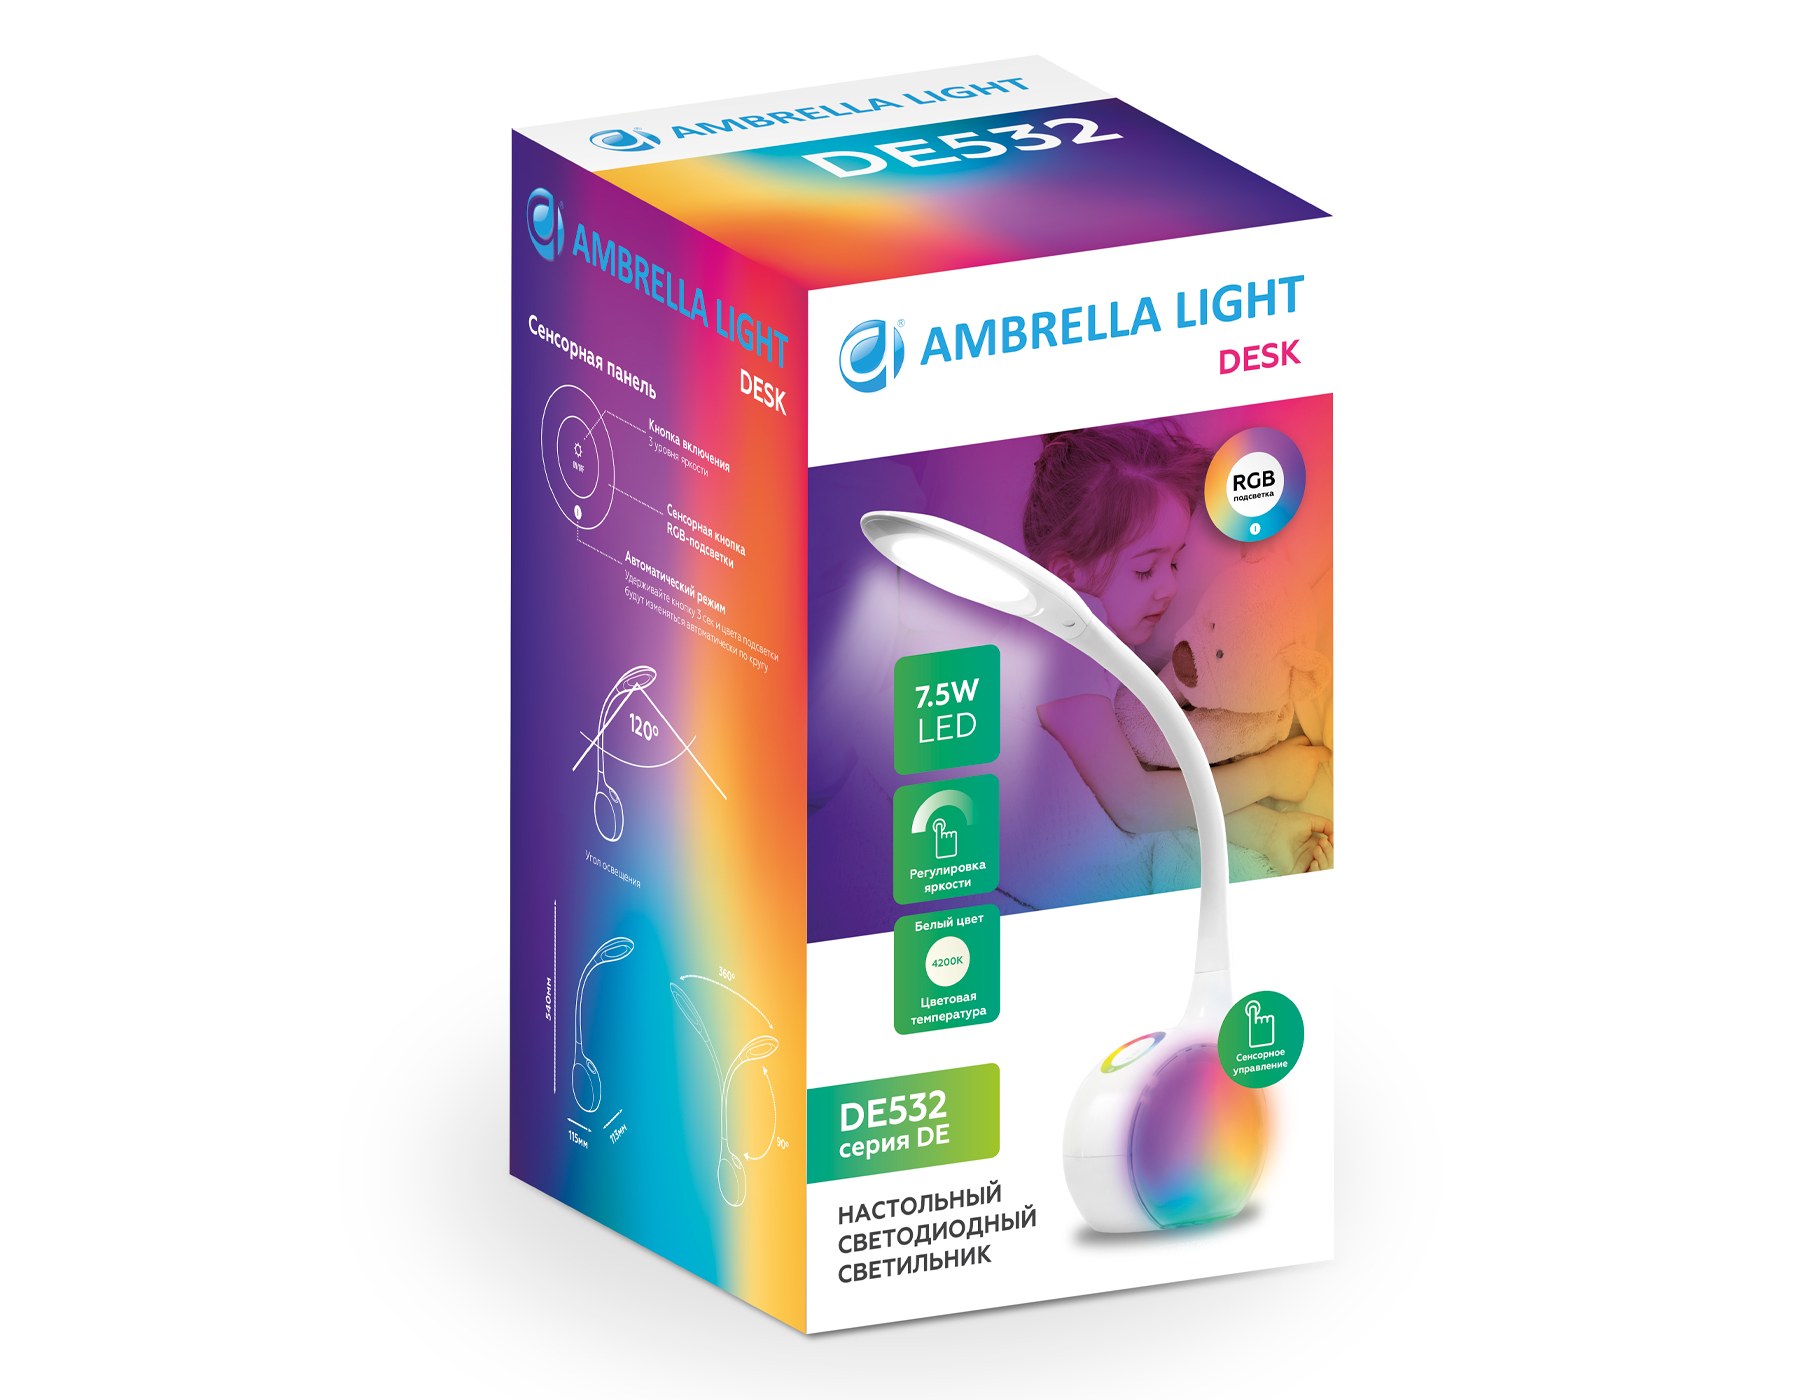 Настольная лампа с RGB подсветкой Ambrella Light Desk DE532